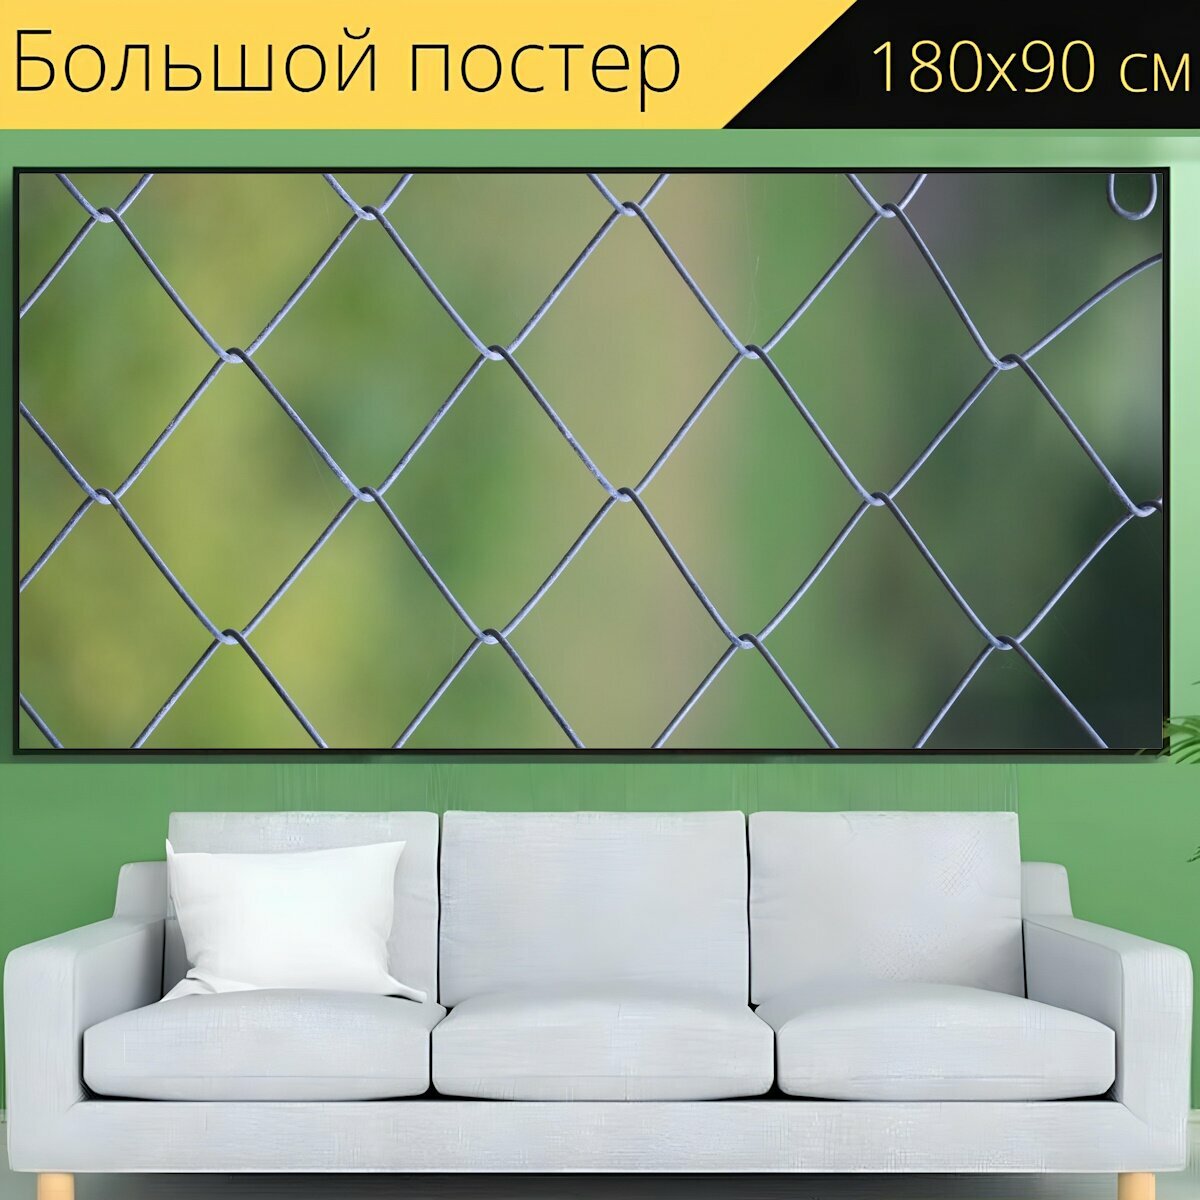 Большой постер "Изгородь, сетка забор, сетка ограждения" 180 x 90 см. для интерьера